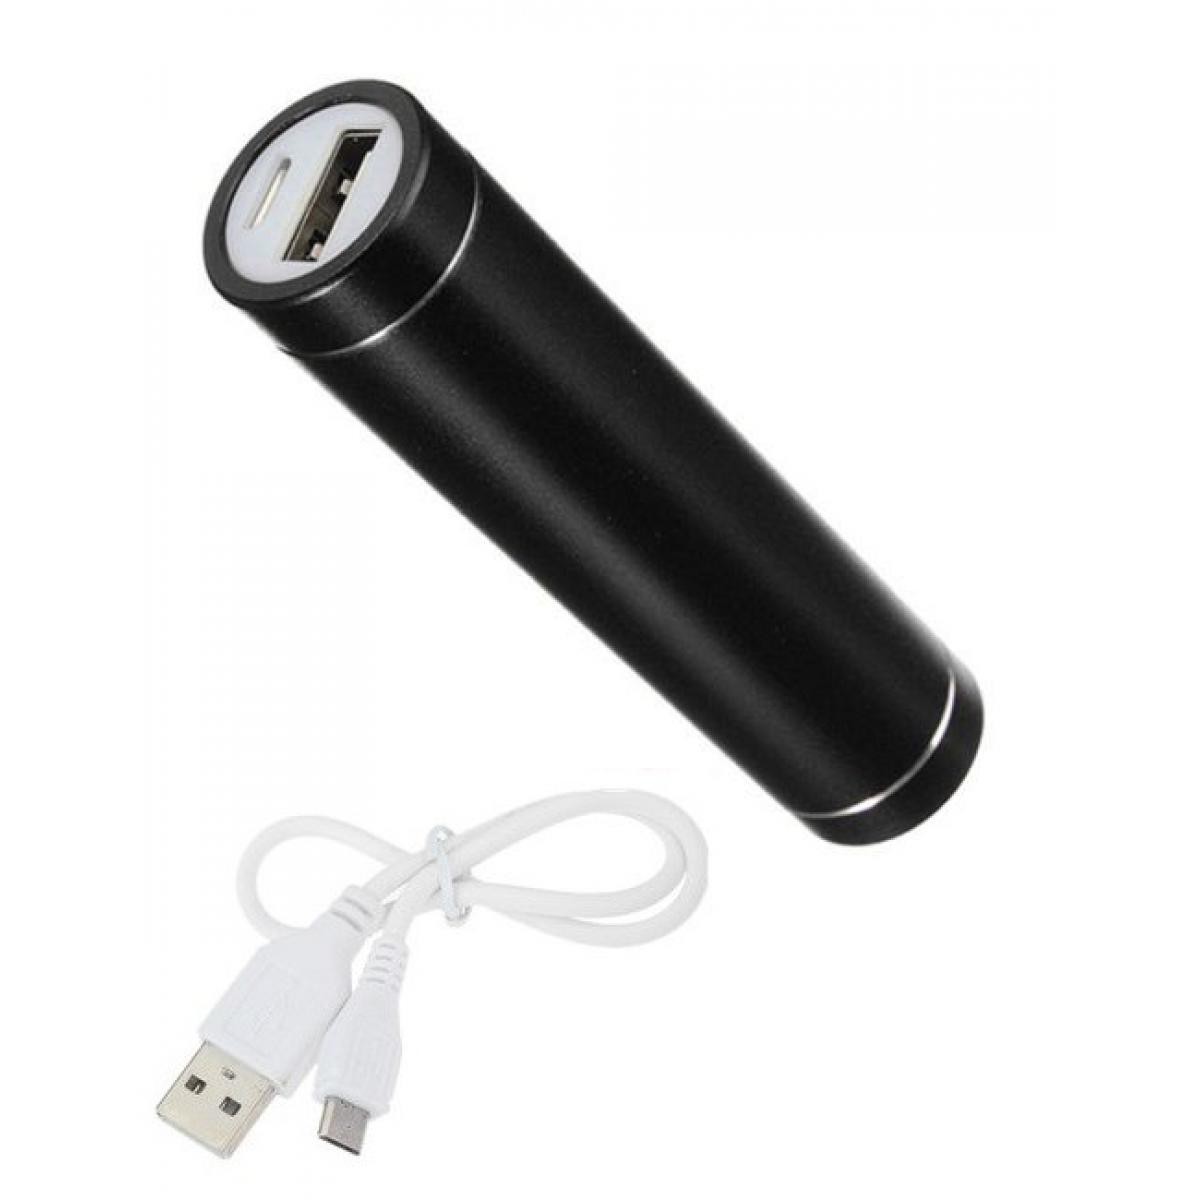 Shot - Batterie Chargeur Externe pour HUAWEI Mate 30 Pro Power Bank 2600mAh avec Cable USB/Mirco USB Secours Telephone (NOIR) - Chargeur secteur téléphone